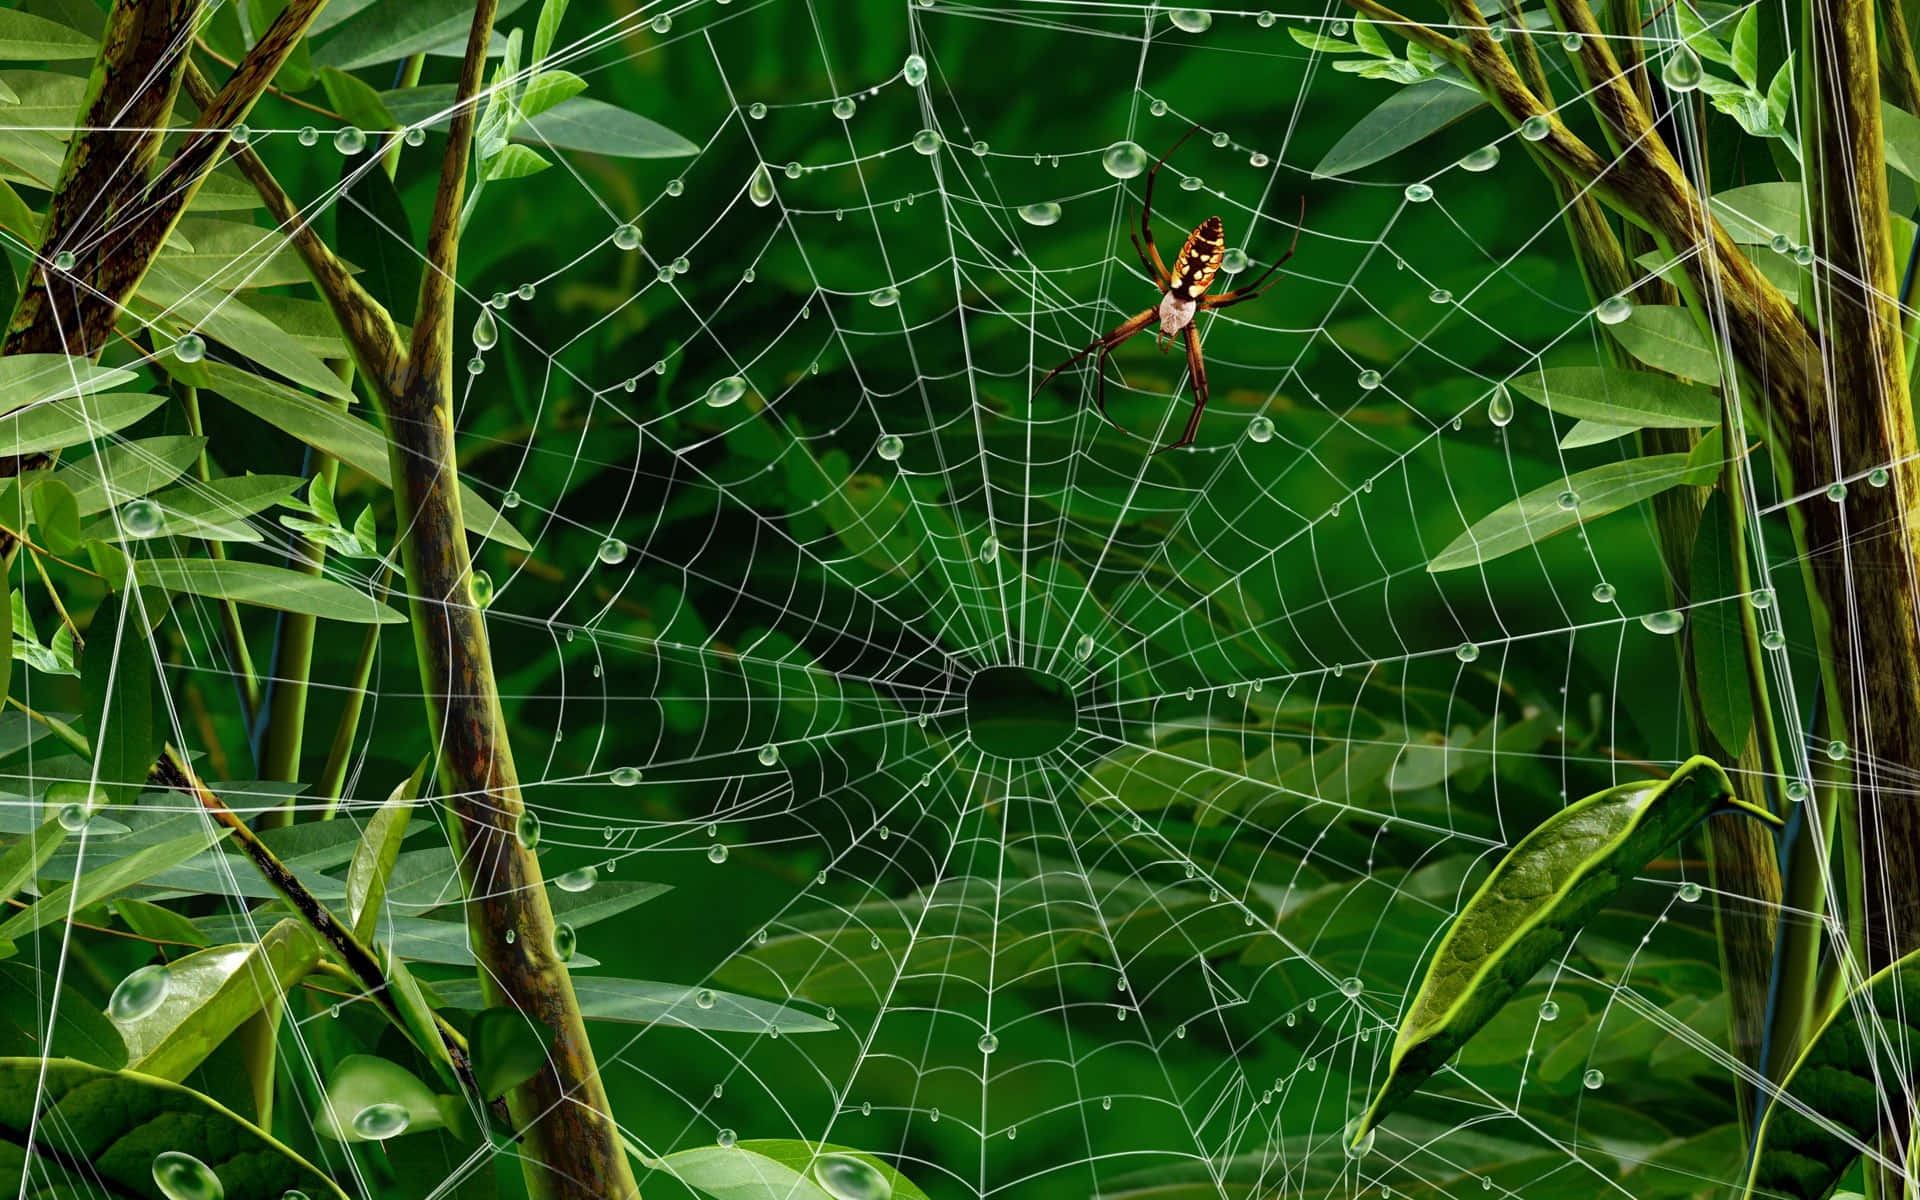 Spideron Dewy Webin Greenery.jpg Wallpaper